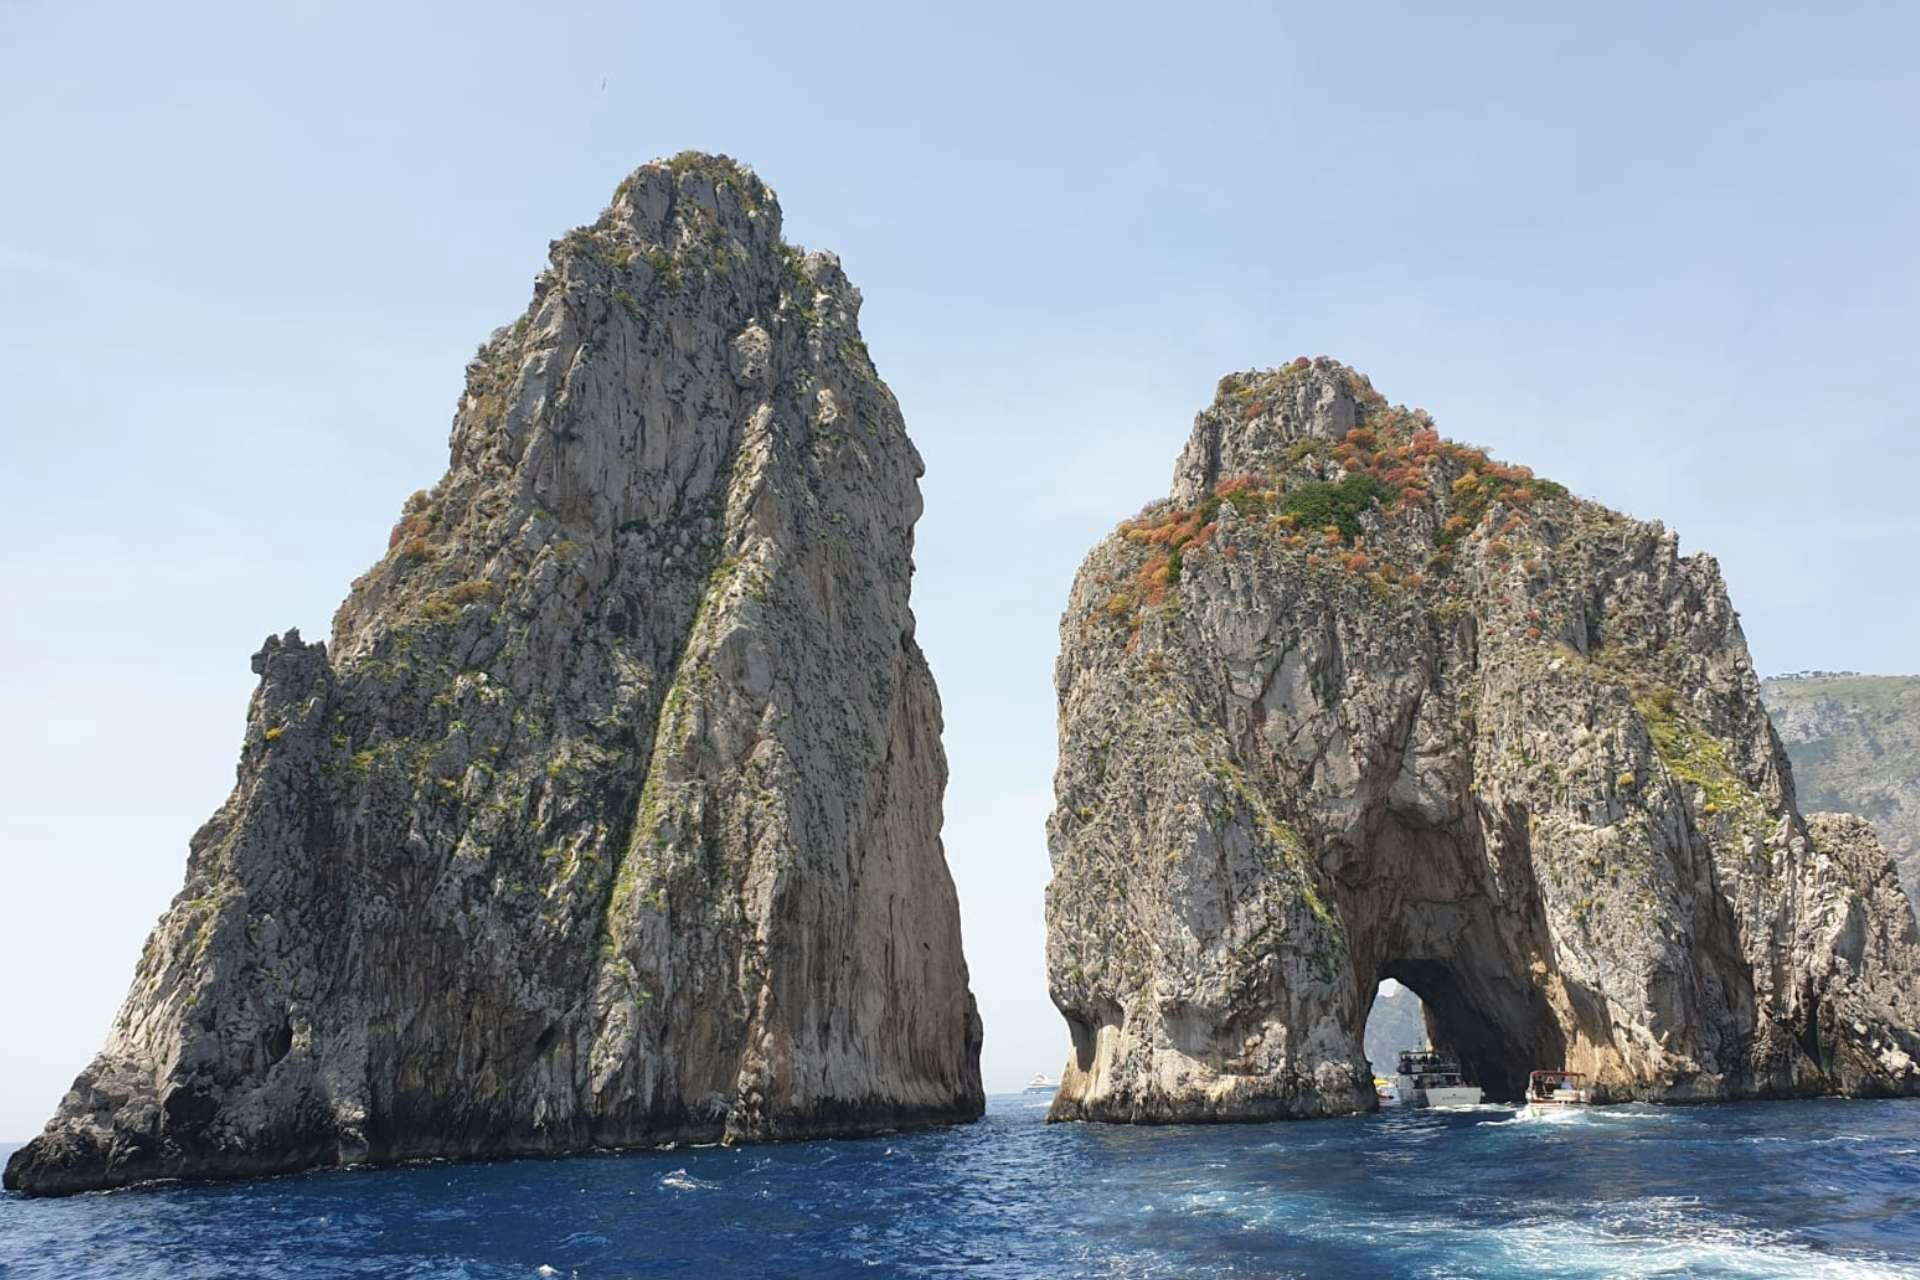 Visit Capri with maximum comfort from the Vesuvian Coast